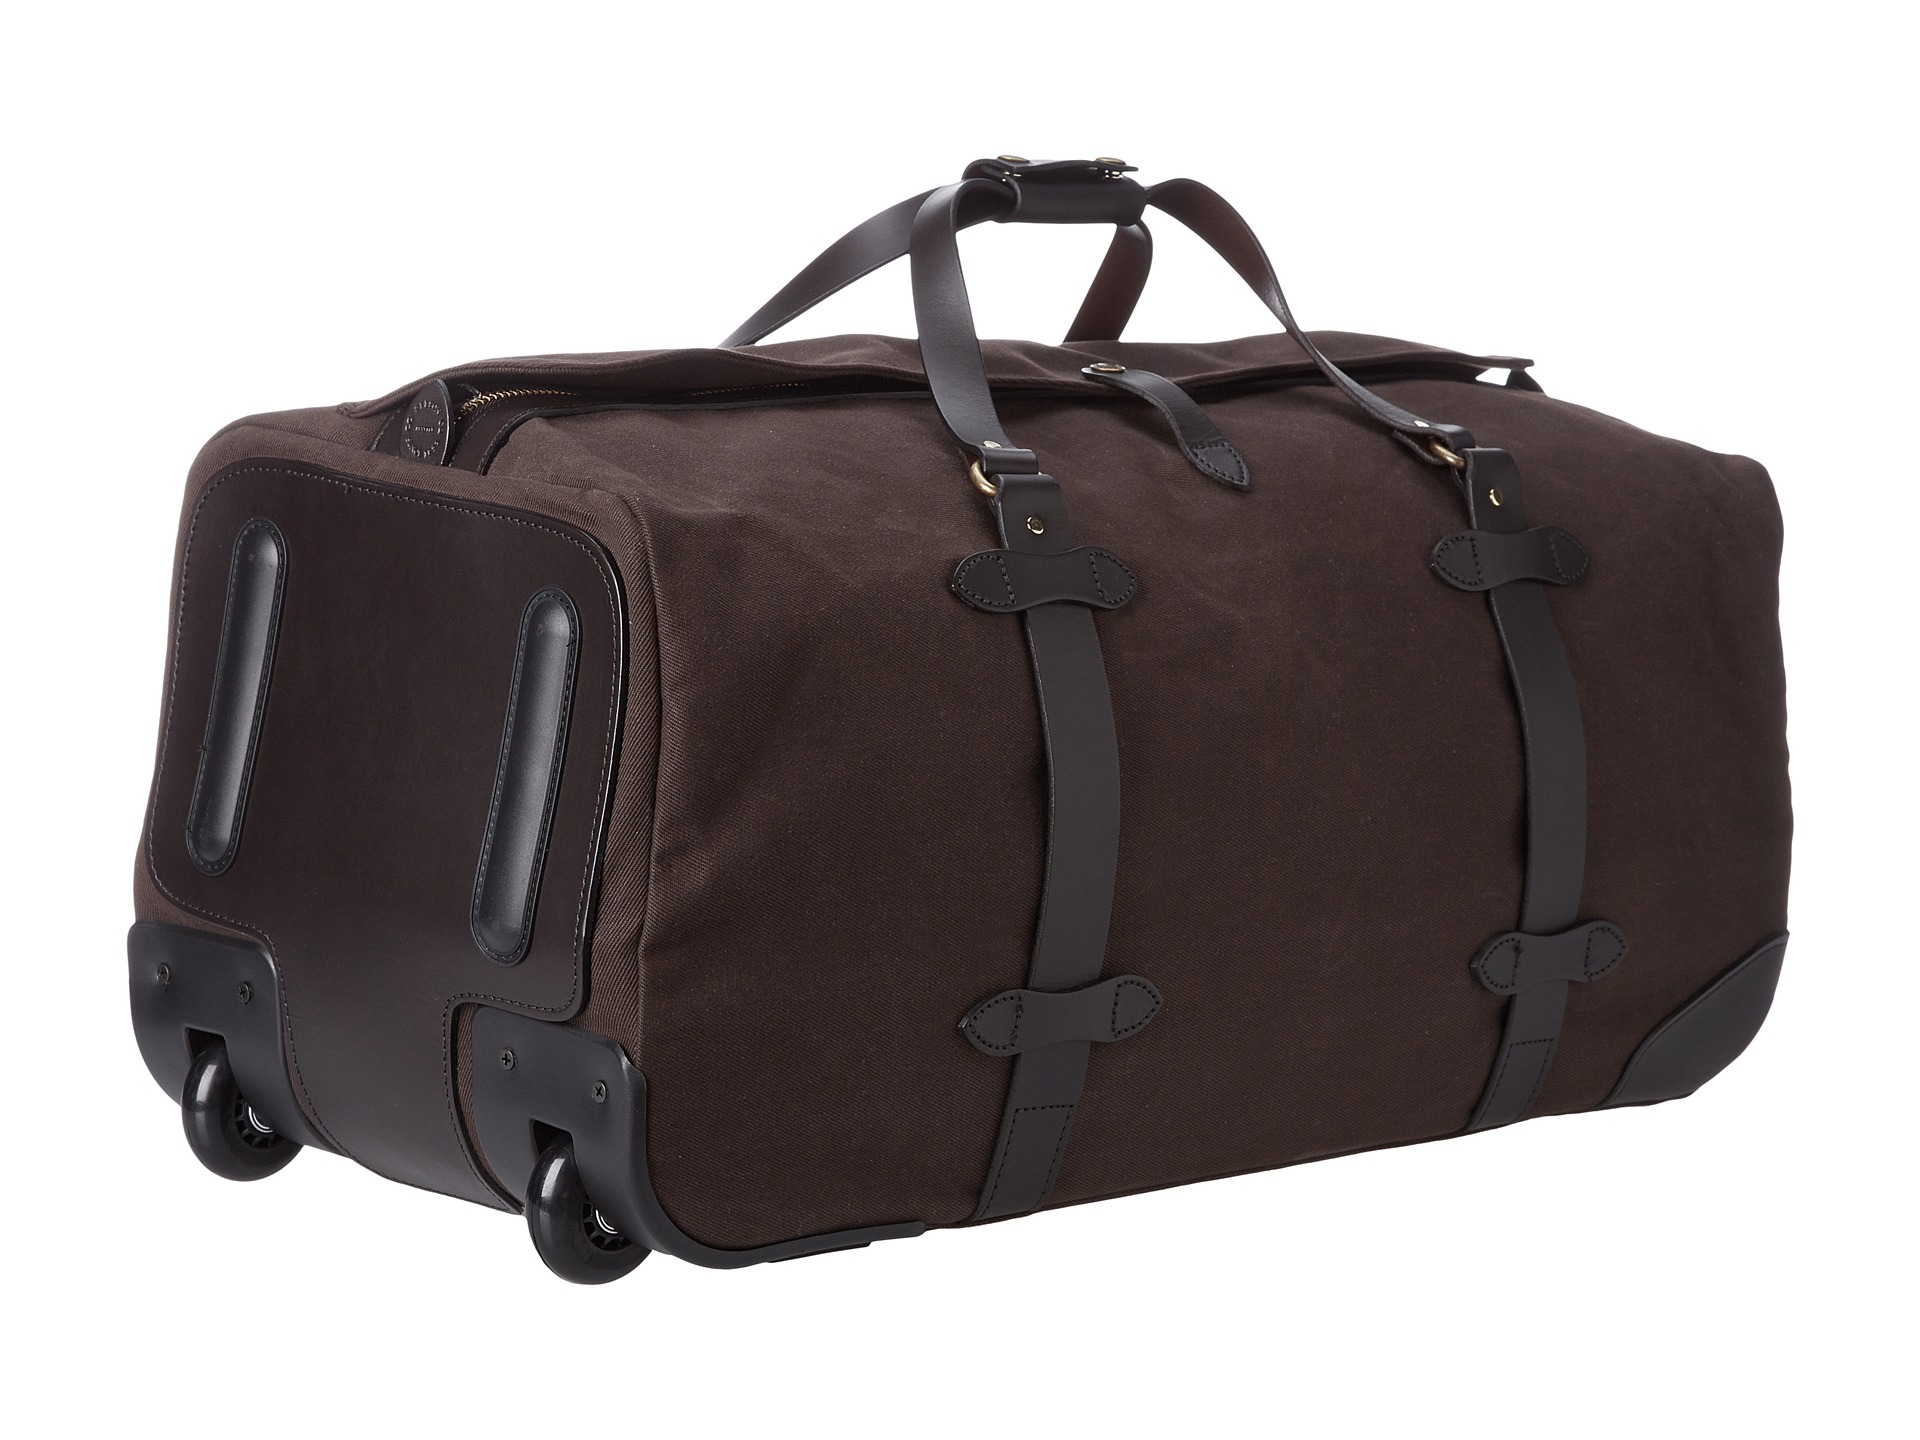 Rolling luggage uk 2014, best wheeled duffle bag luggage, luggage bags ...